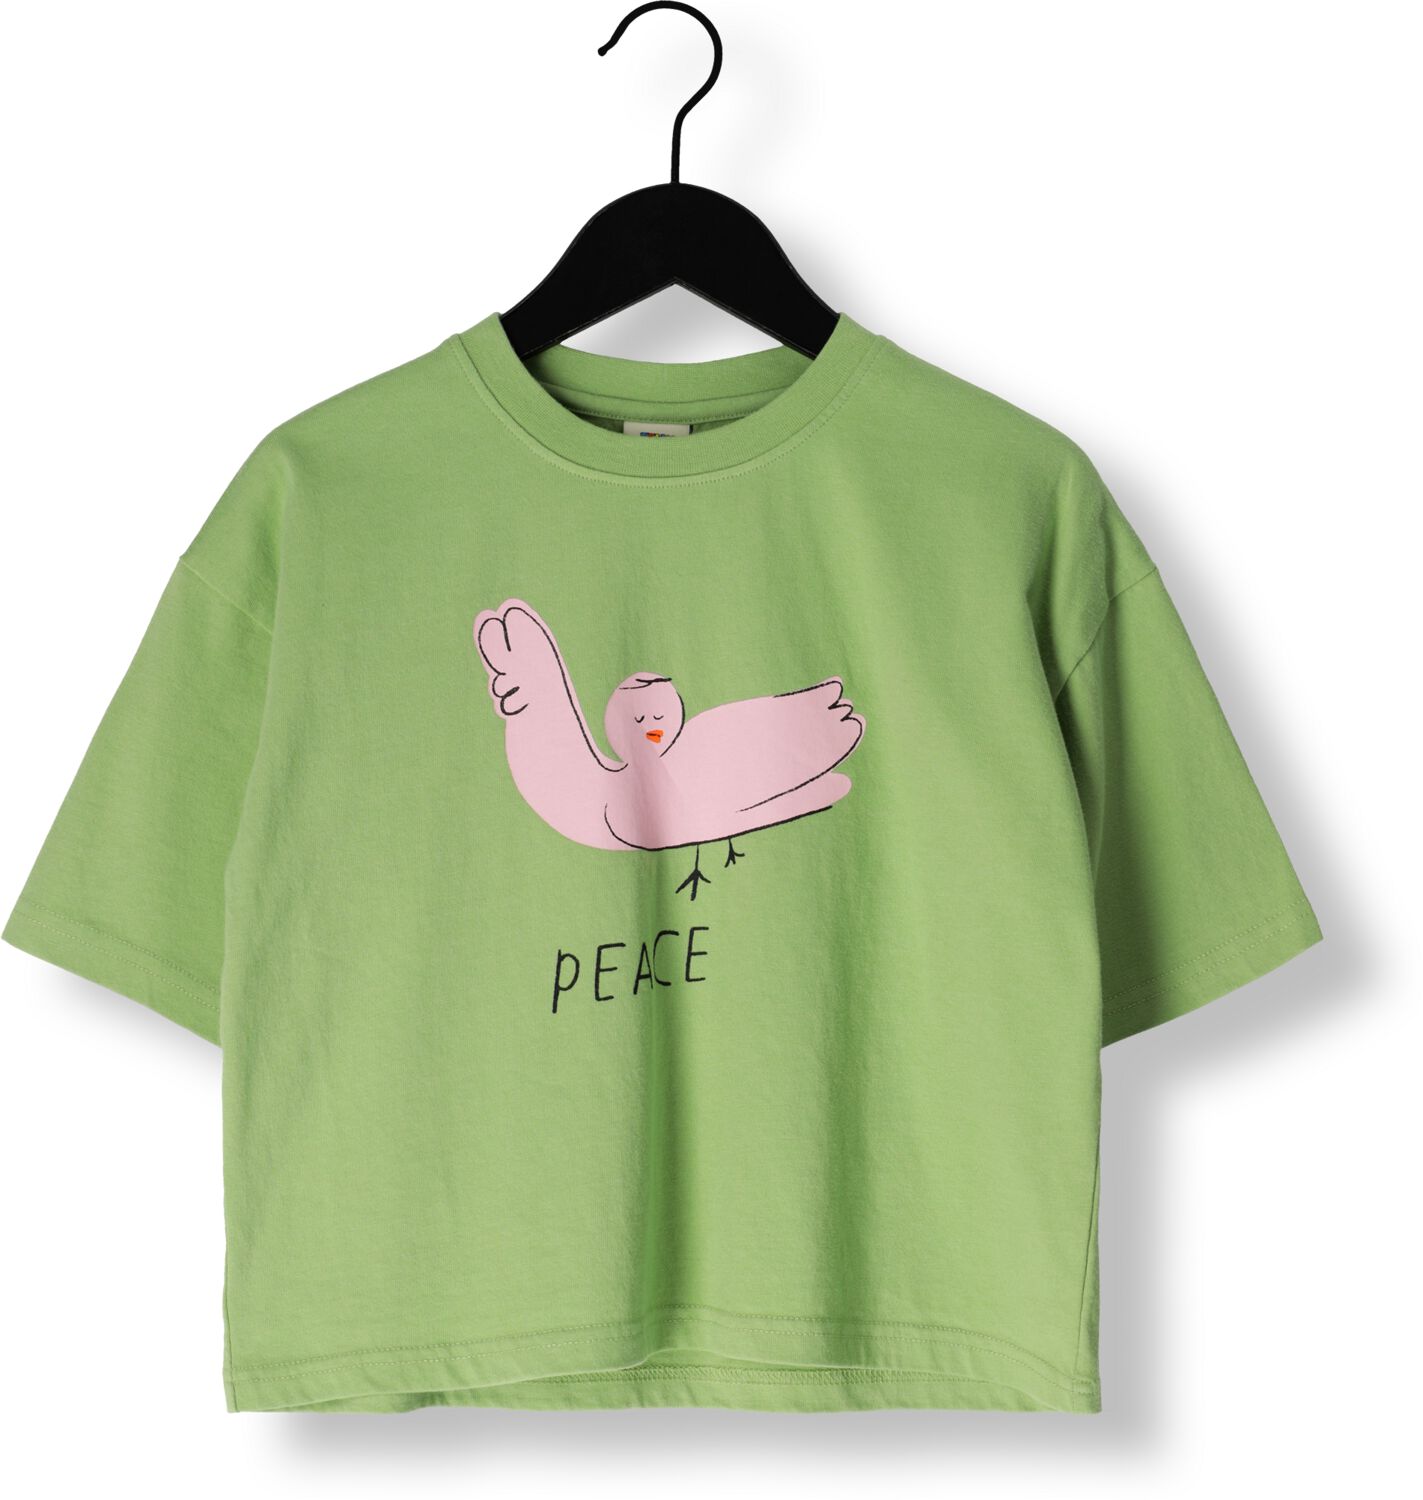 Jelly Mallow Meisjes Tops & T-shirts Peace T-shirt Groen-11Y